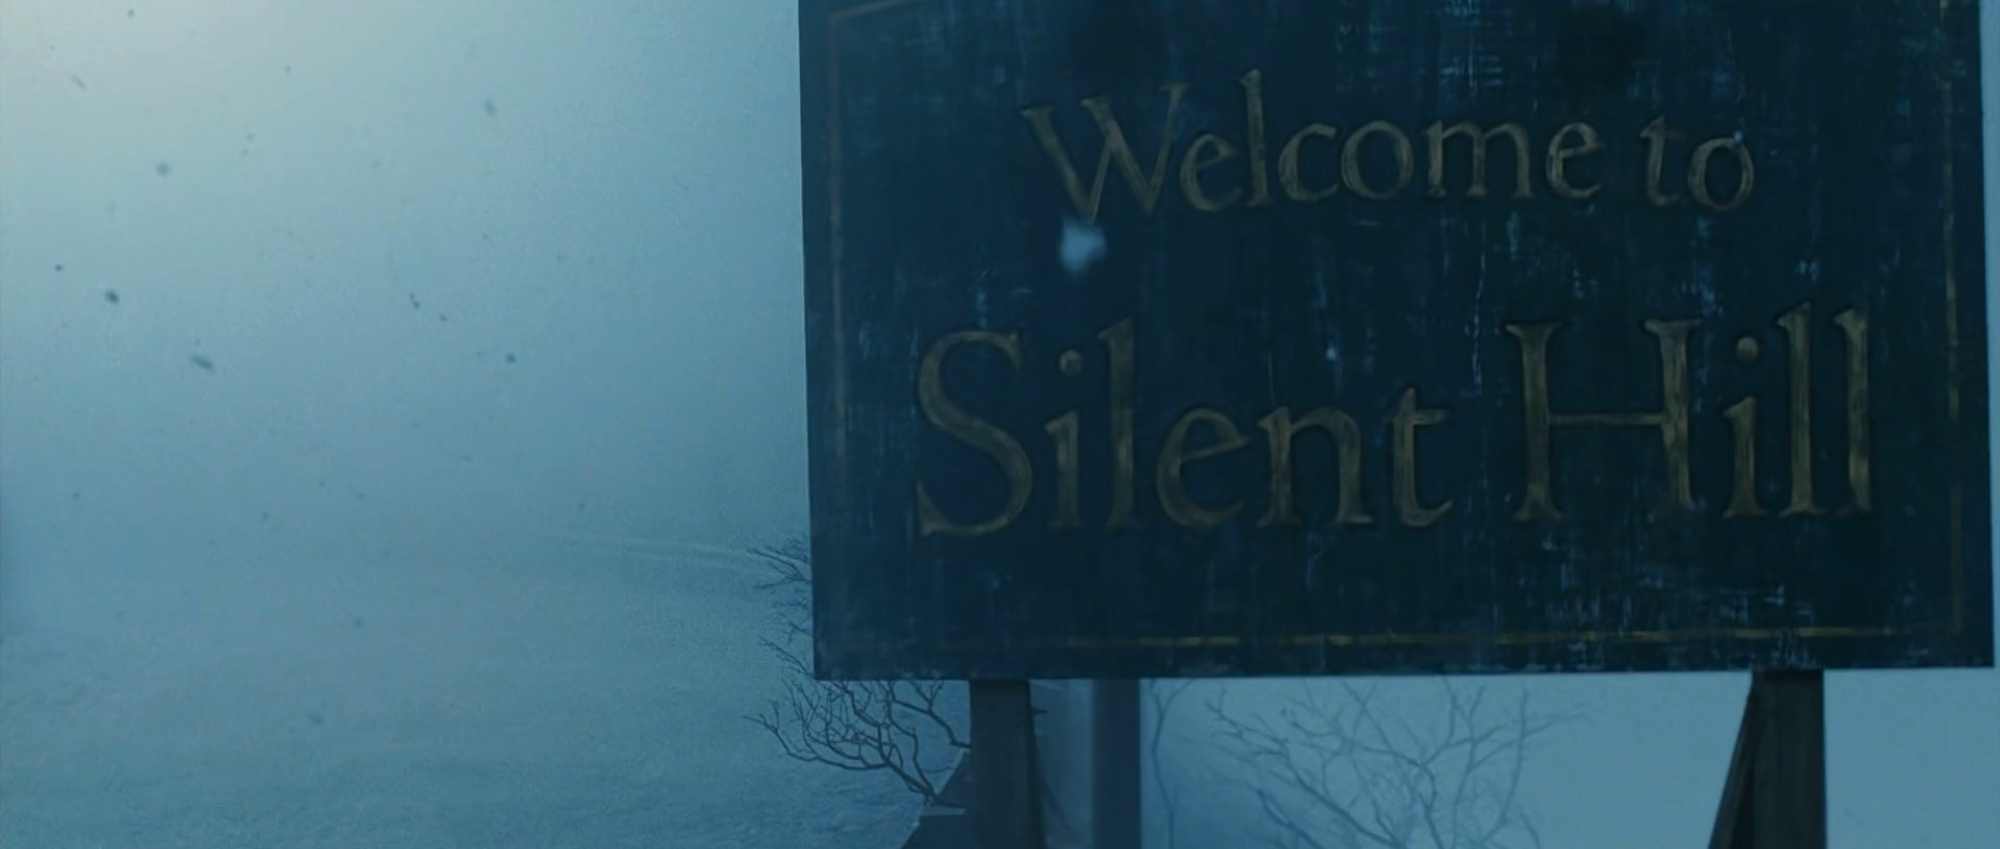 نقد و بررسی فیلم های سایلنت هیل (Silent Hill)؛ اعاده‌ی حیثیت از جادوگران!